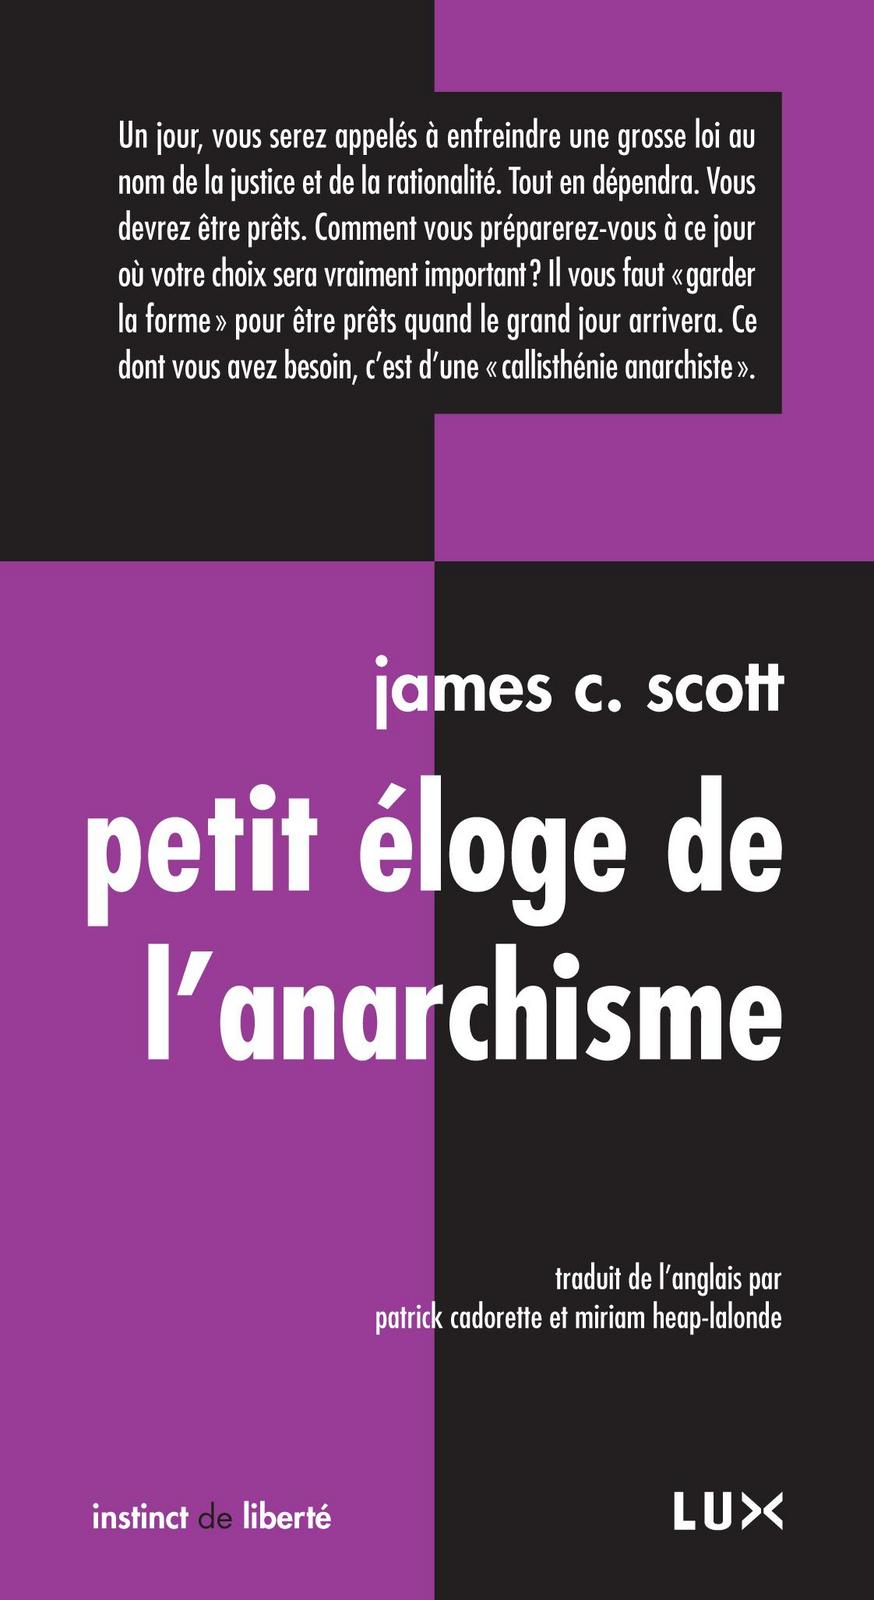 James C. Scott: Petit éloge de l’anarchisme (French language, 2013, Lux Éditeur)